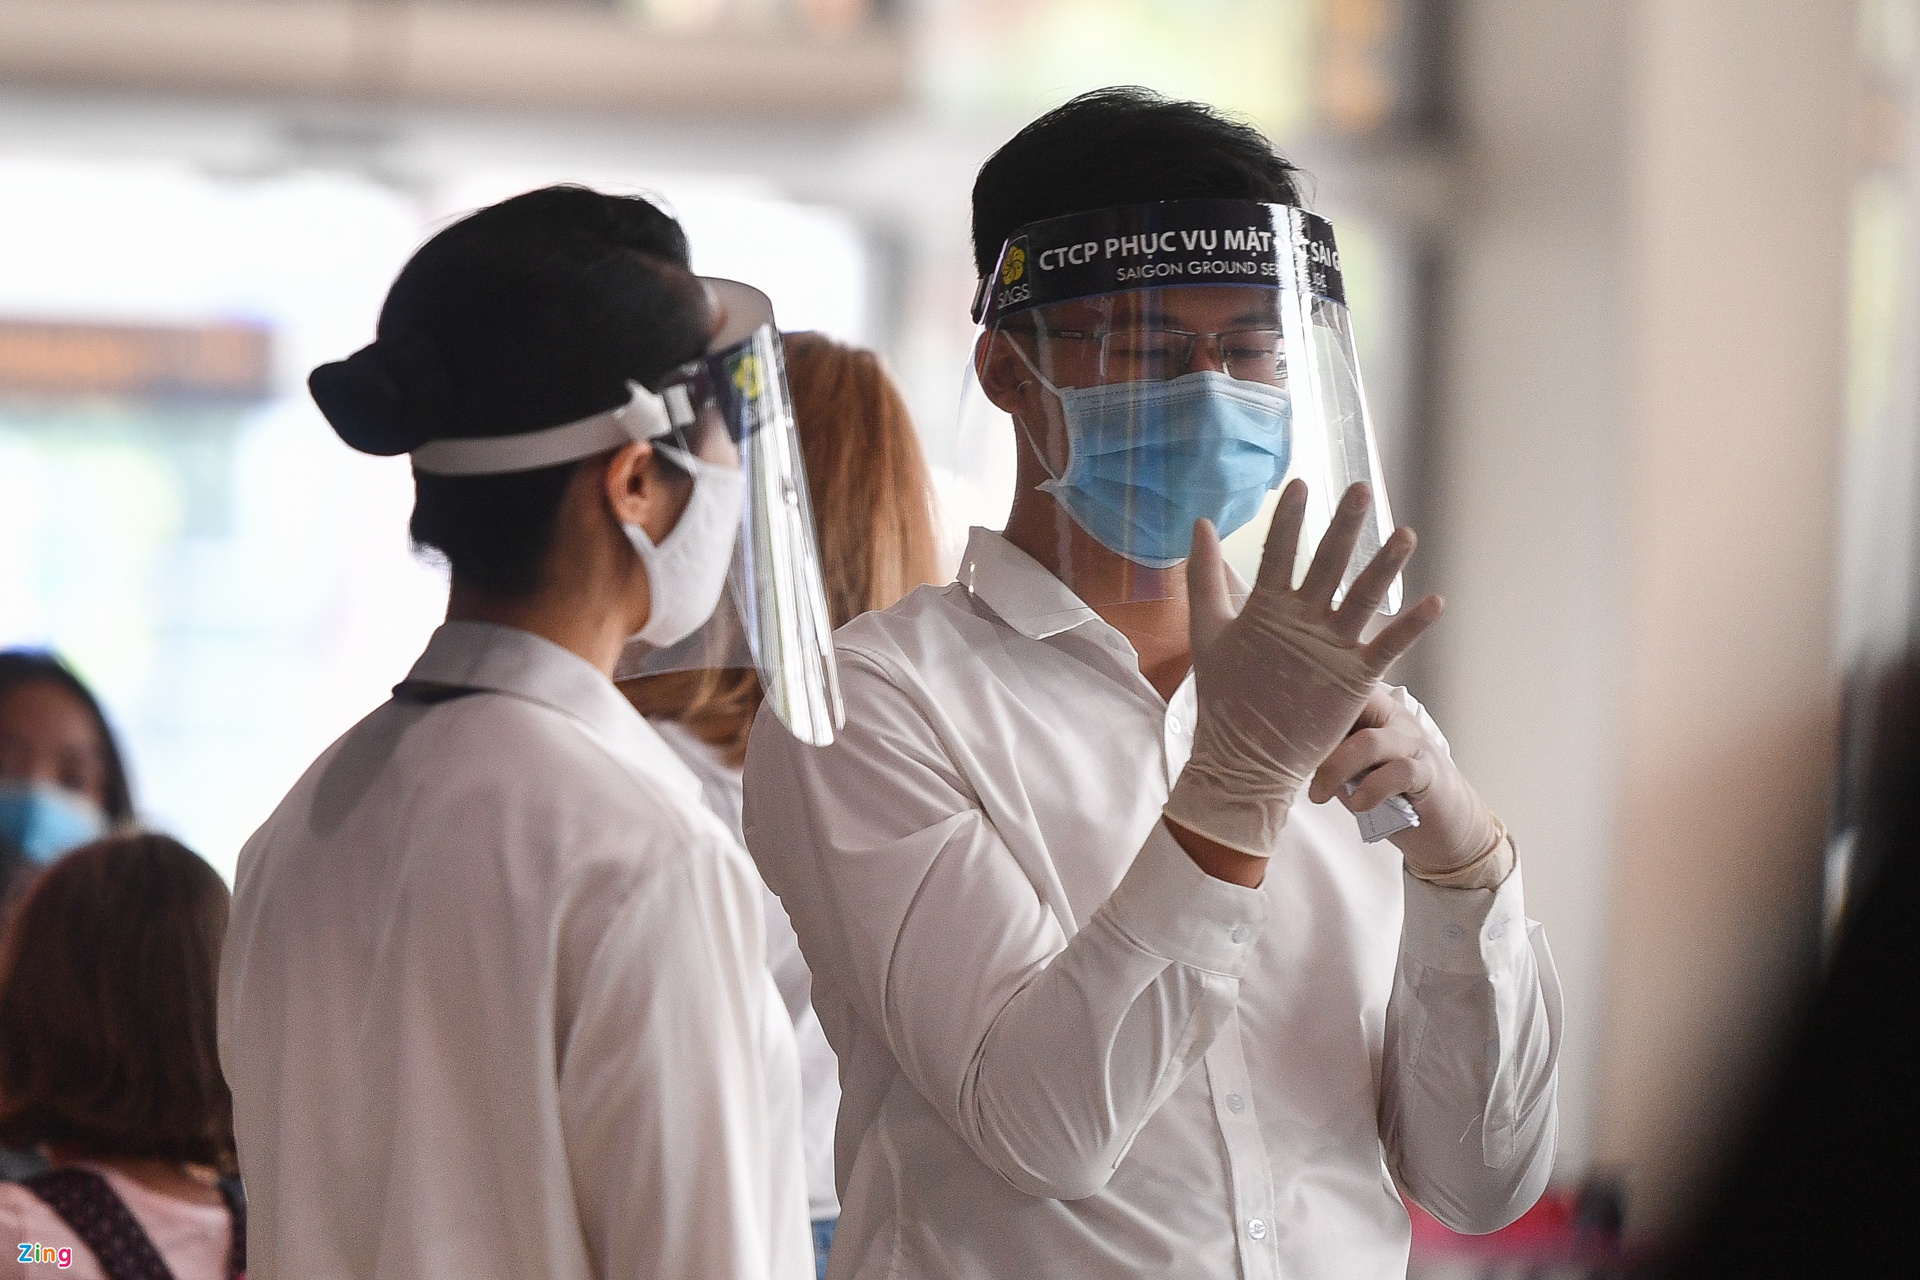 Nhân viên y tế tại sân bay Tân Sơn Nhất. Ảnh: Zing